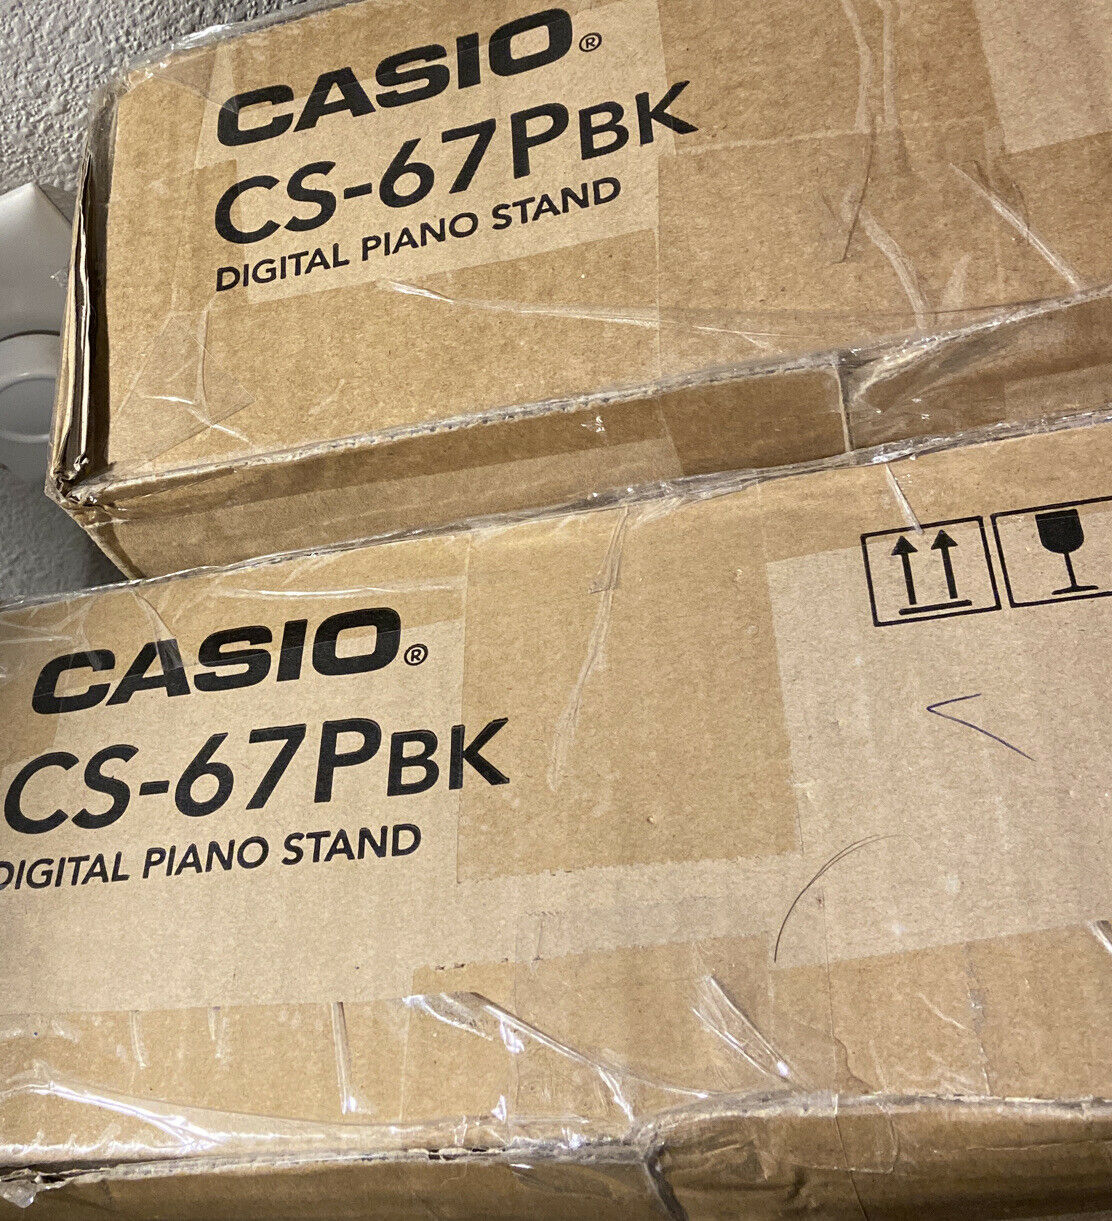 Casio Cs-67 Privia Digital Piano Stand New #r8915